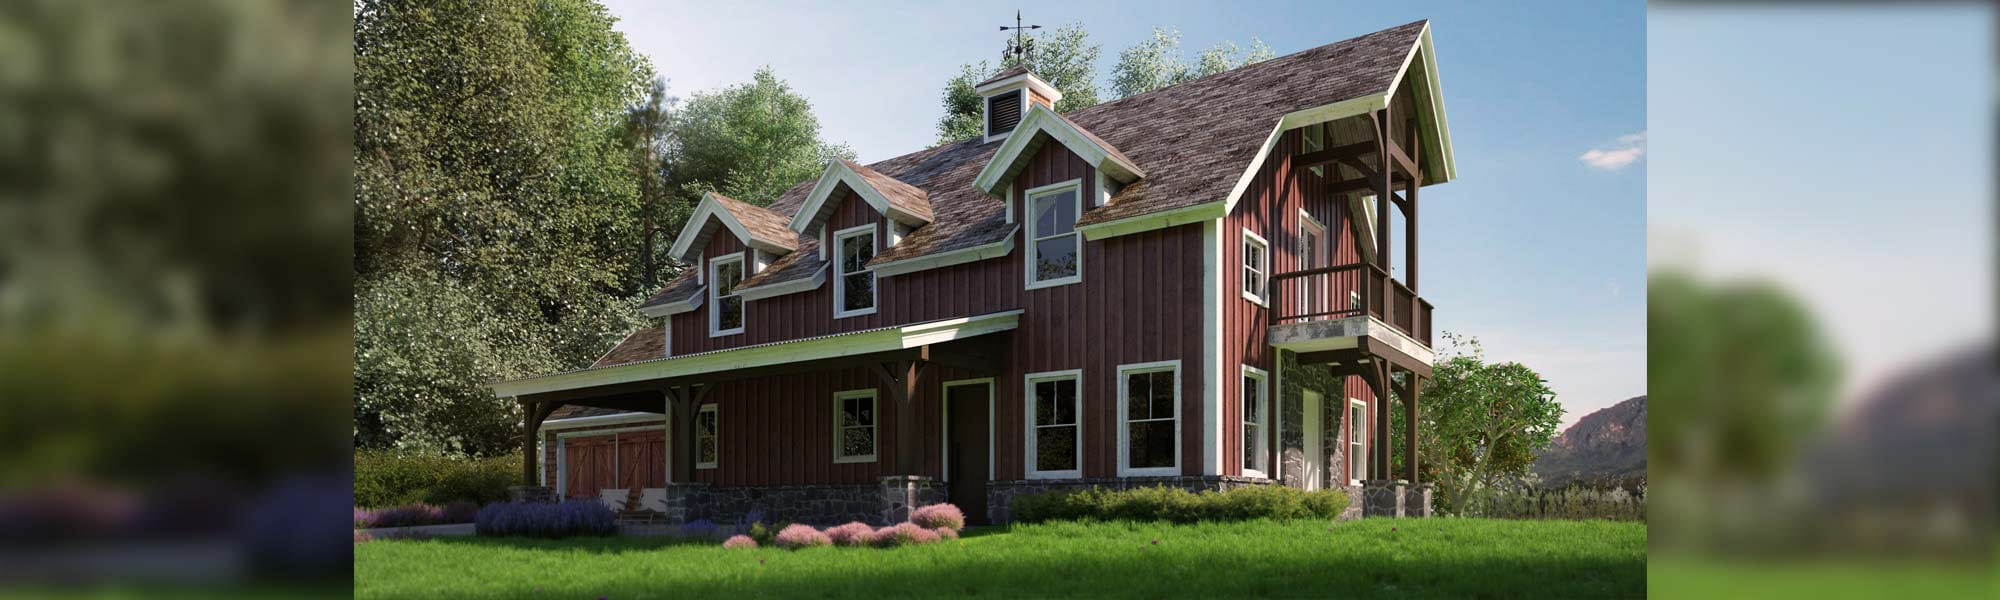 Stafford barn style design